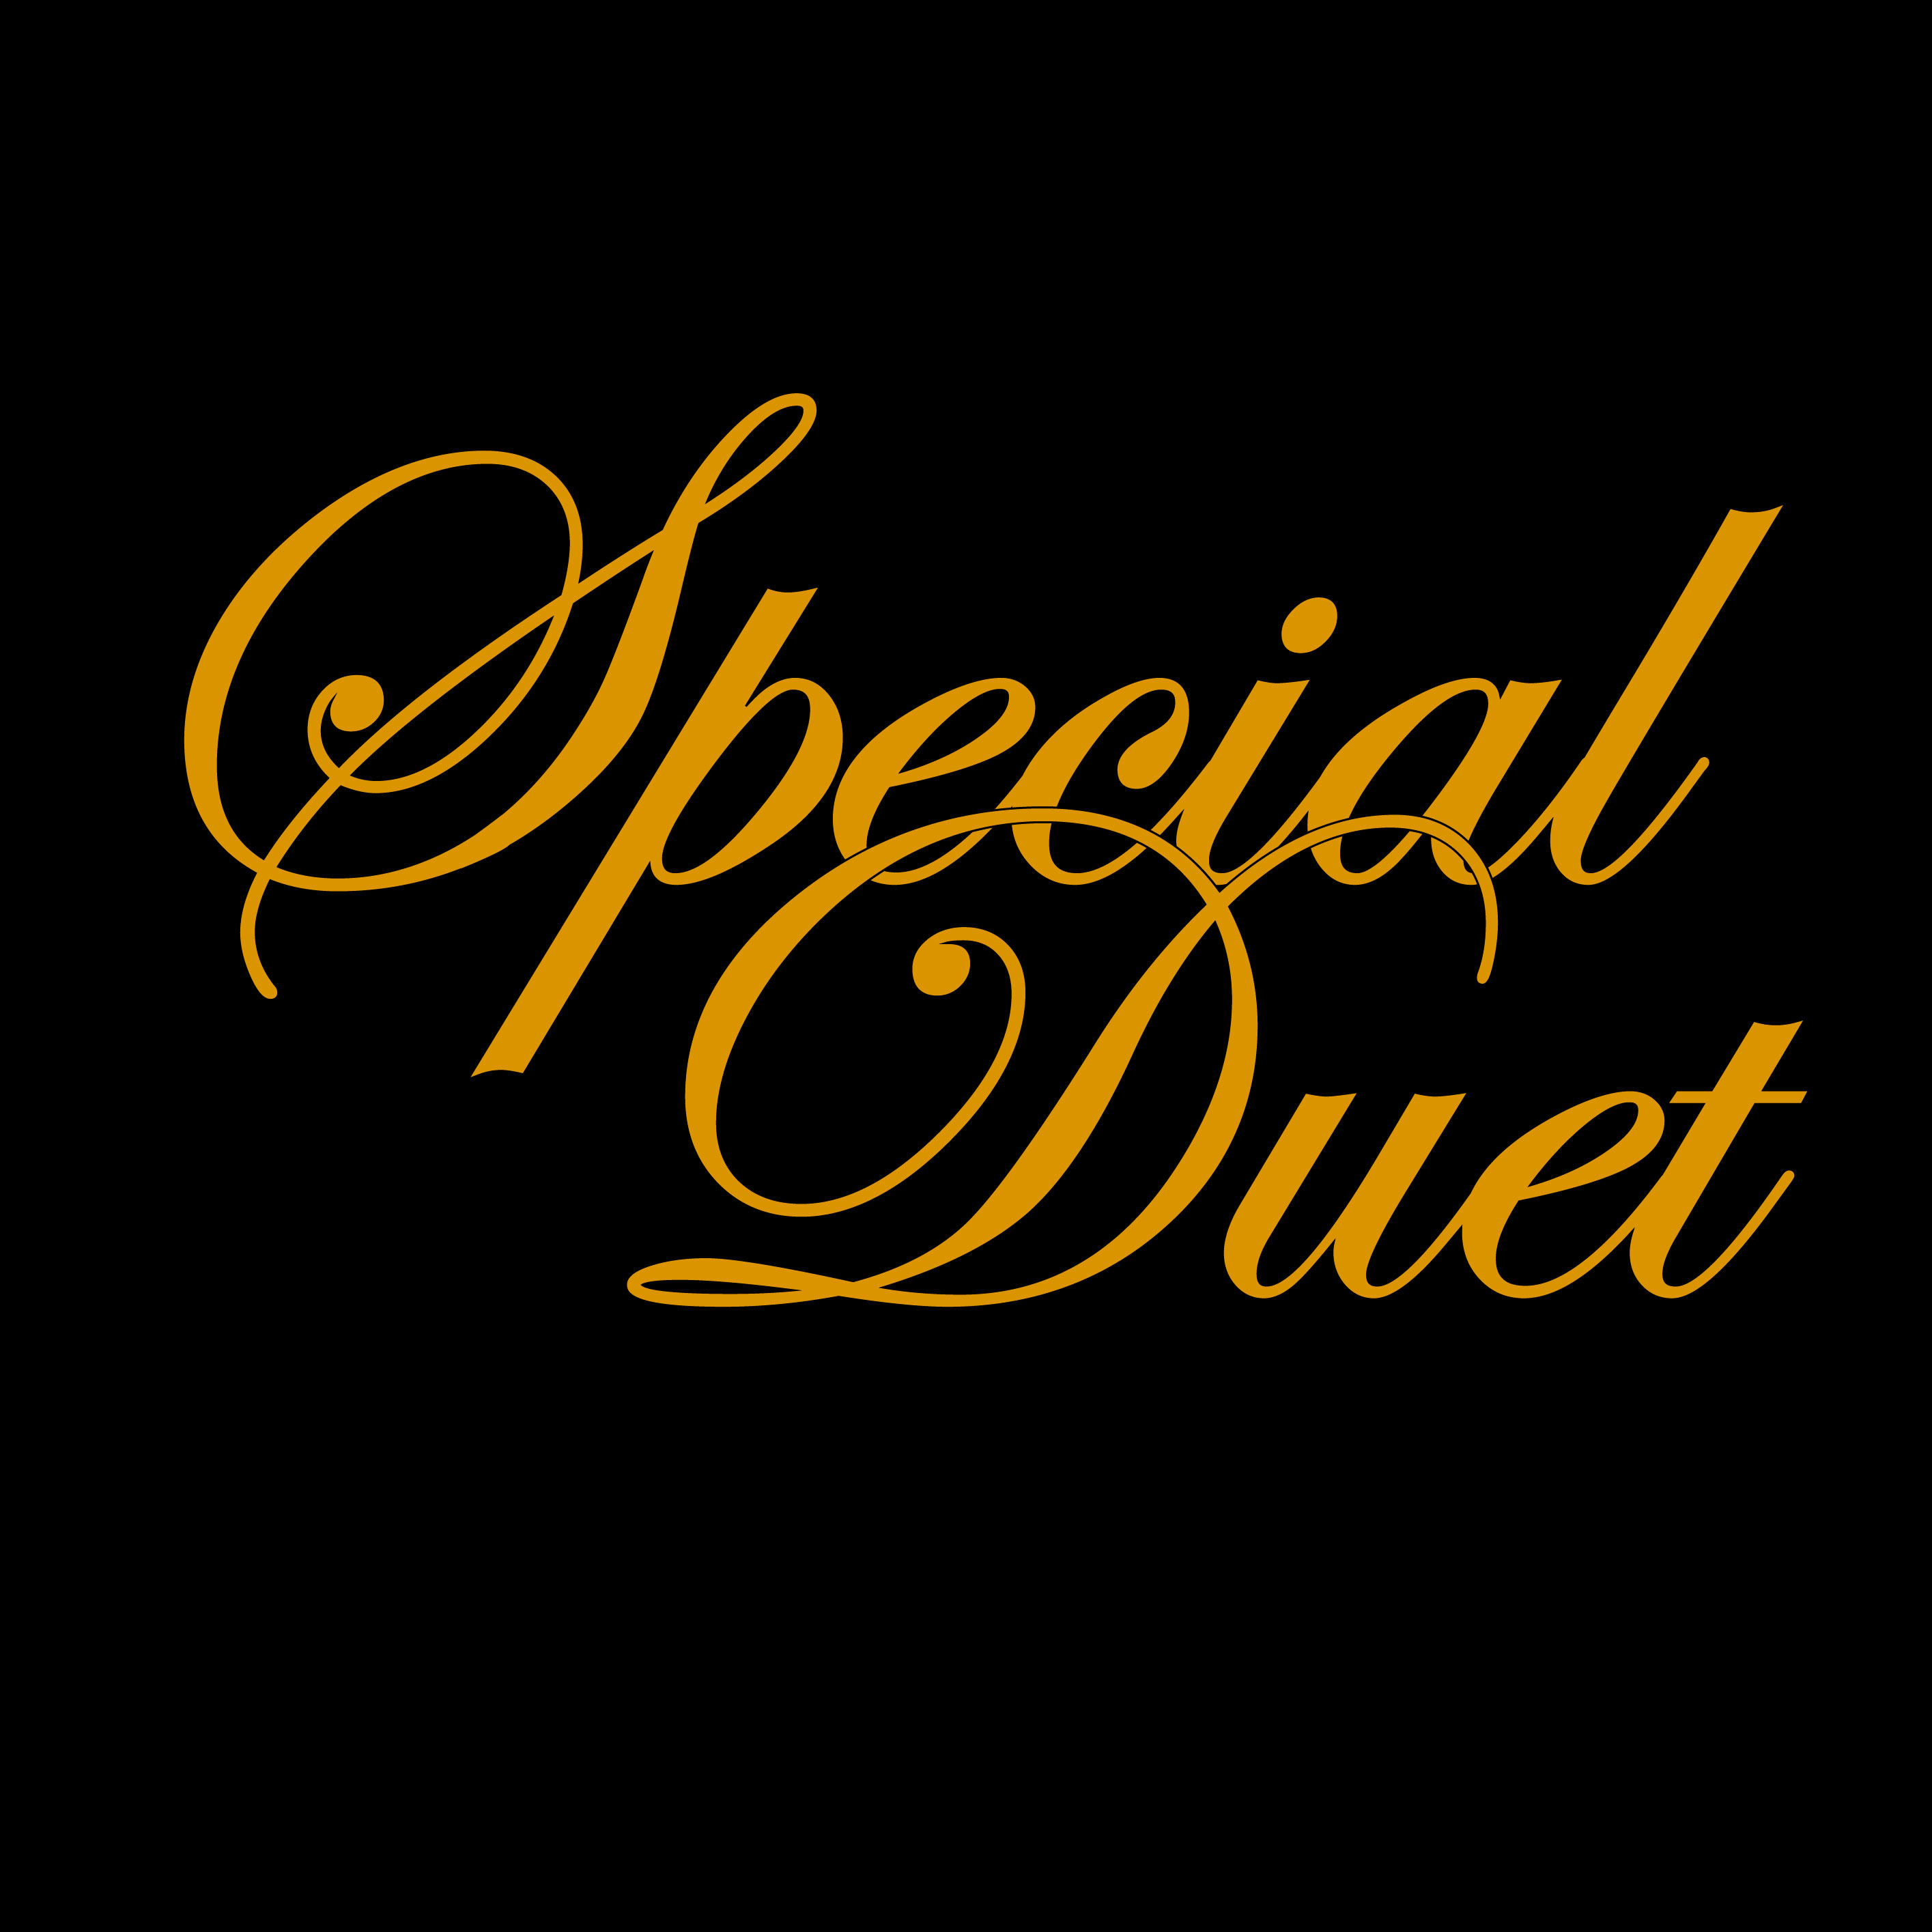 Special dueto - cenas elegantes